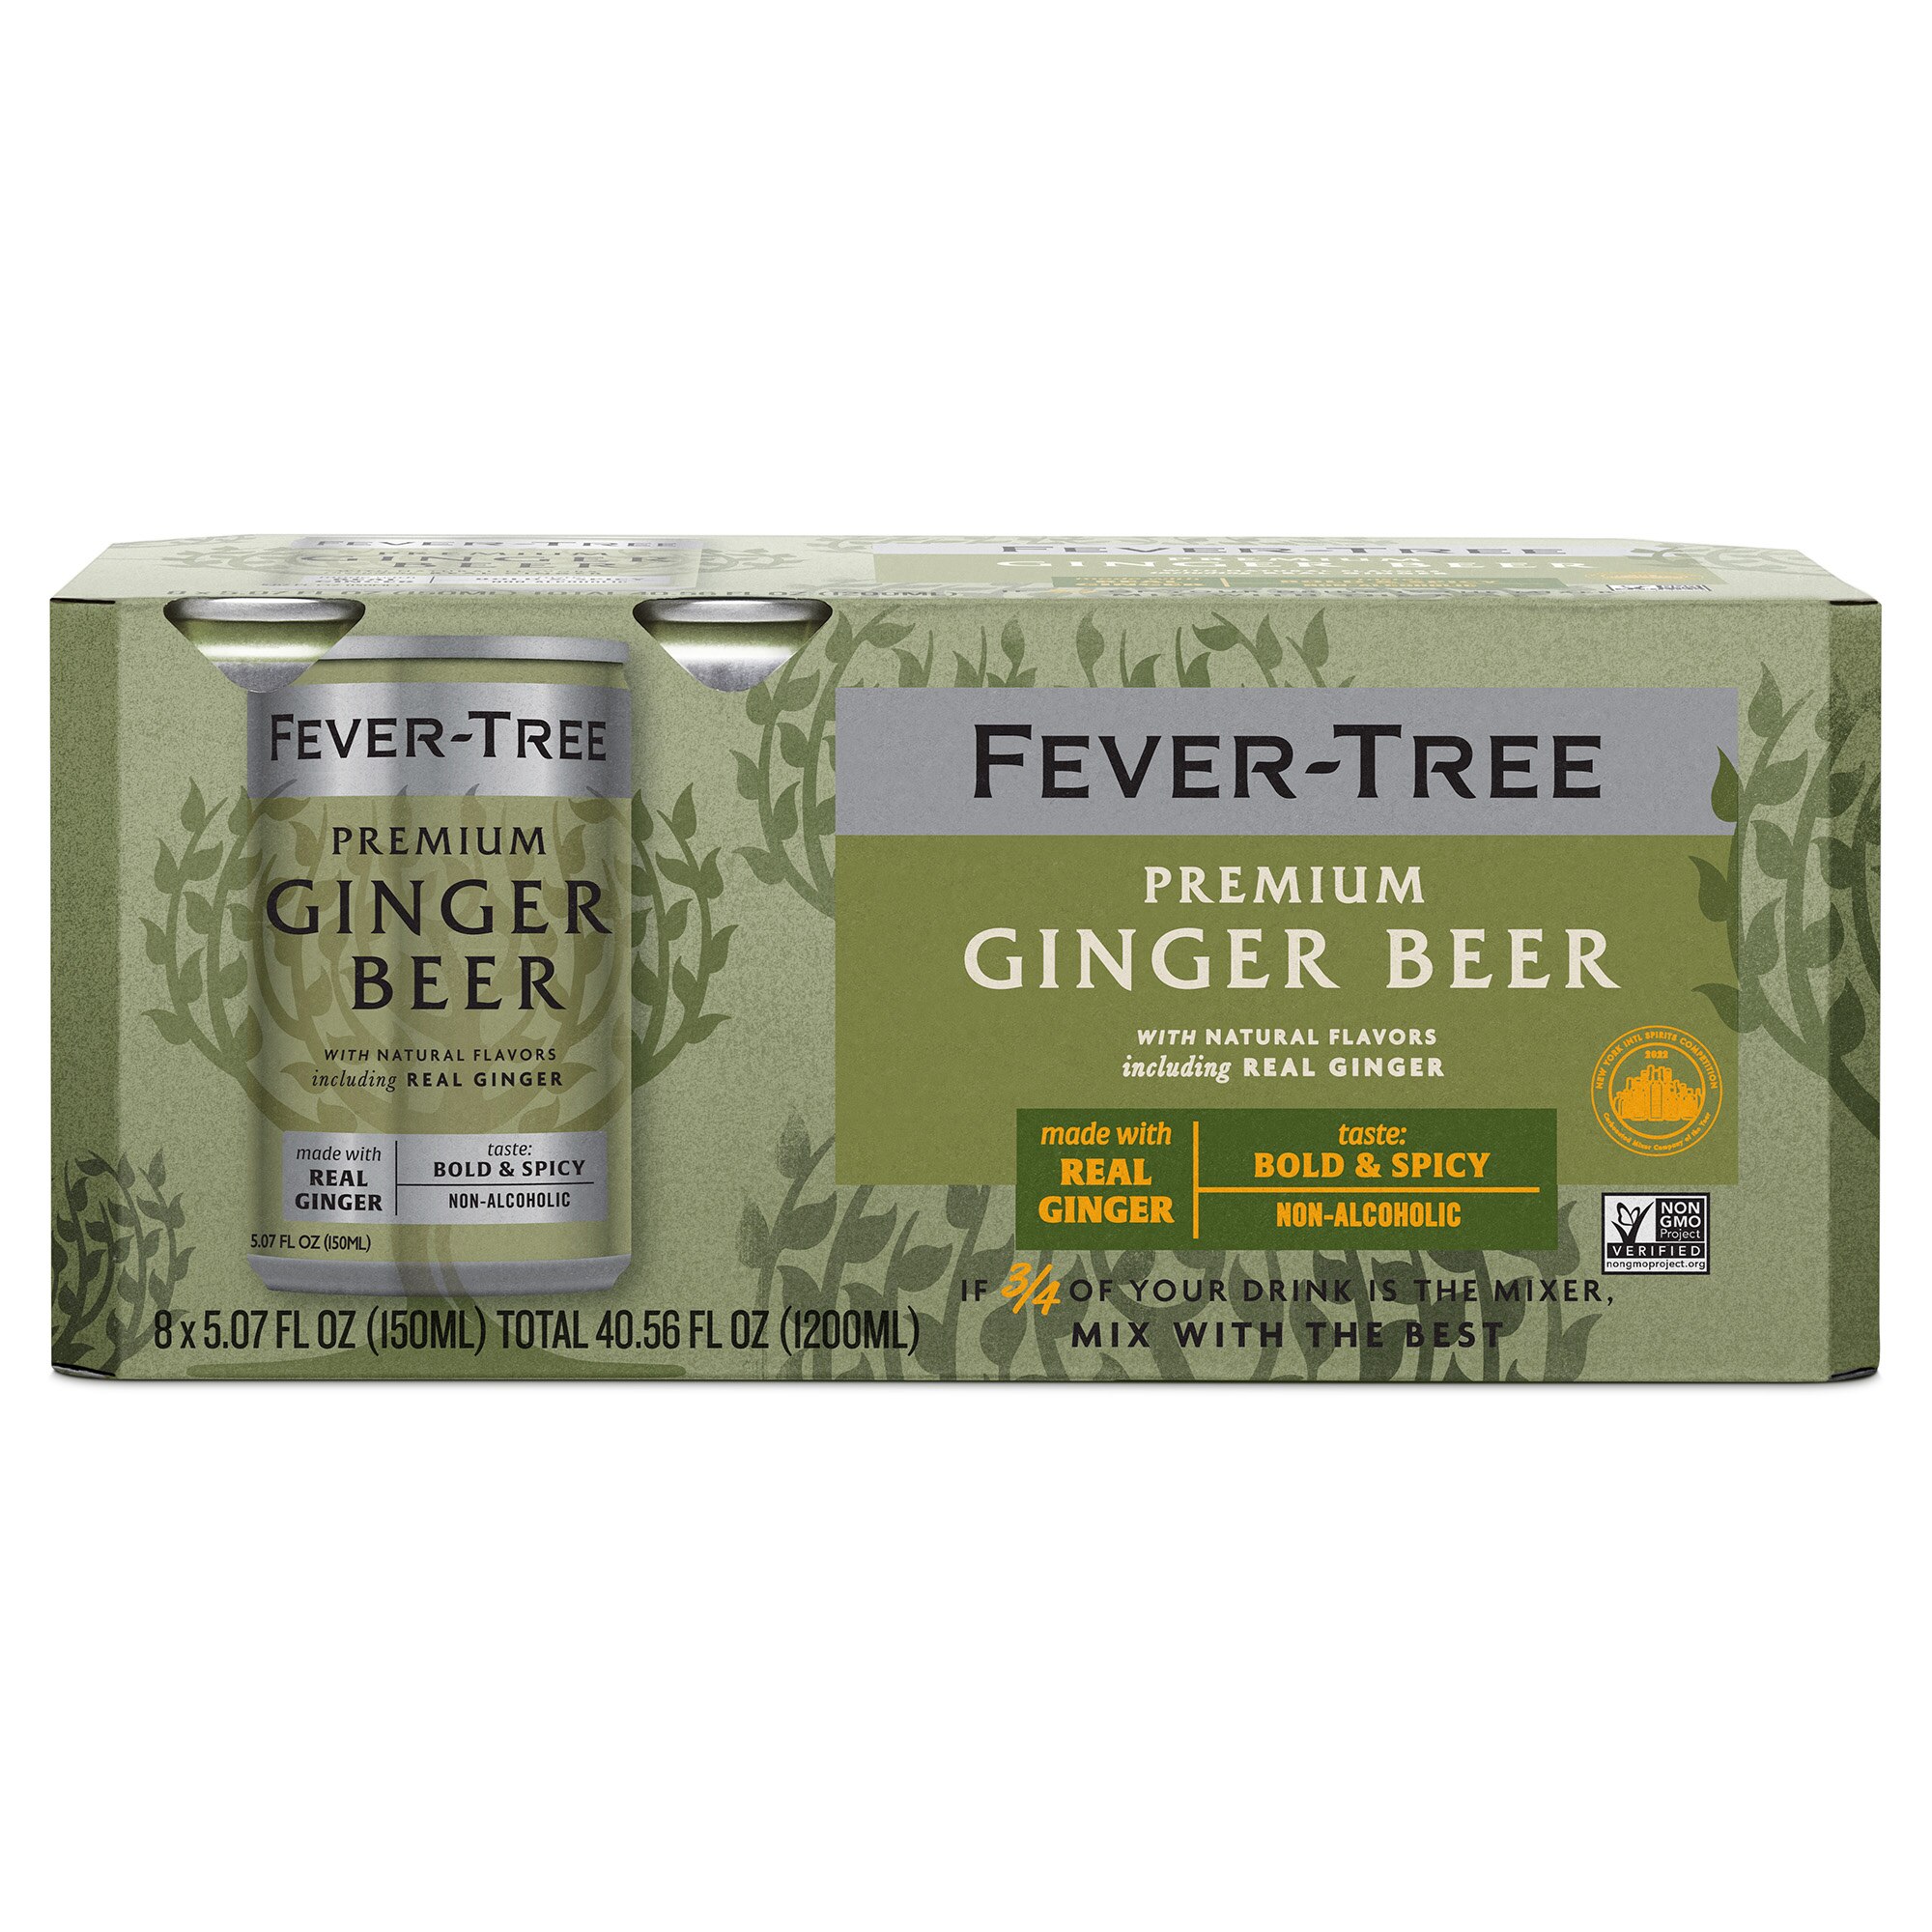 Fever-Tree - Cerveza de jengibre en lata, 8 u., 40.5 oz